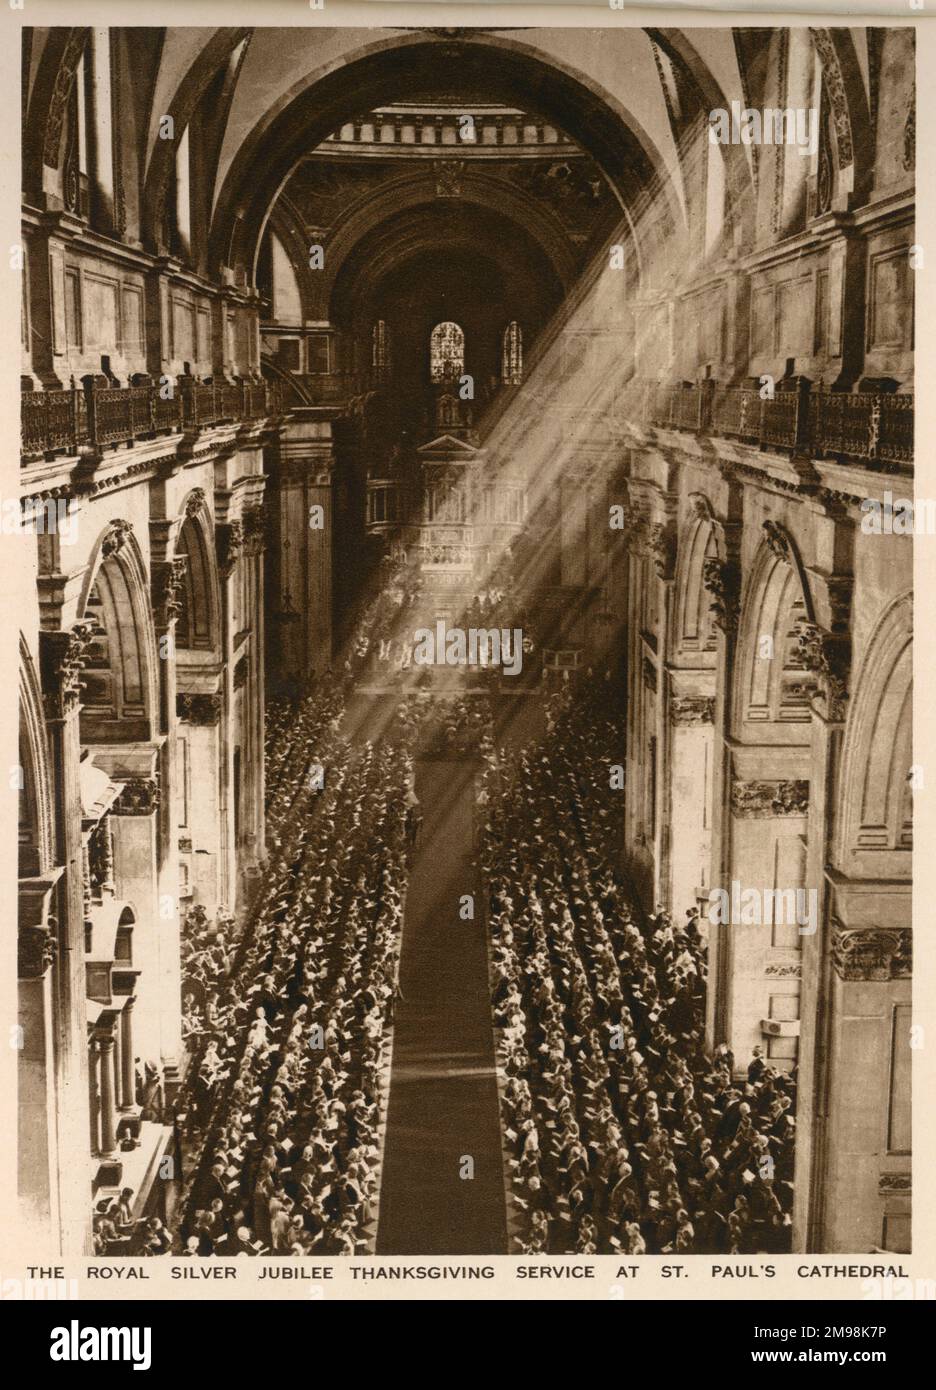 Vista aerea all'interno della Cattedrale di San Paolo, che mostra il servizio di ringraziamento del Giubileo d'Argento reale in corso il 6 maggio 1935, per celebrare i 25 anni di Re Giorgio V e della Regina Maria sul trono britannico. Foto Stock